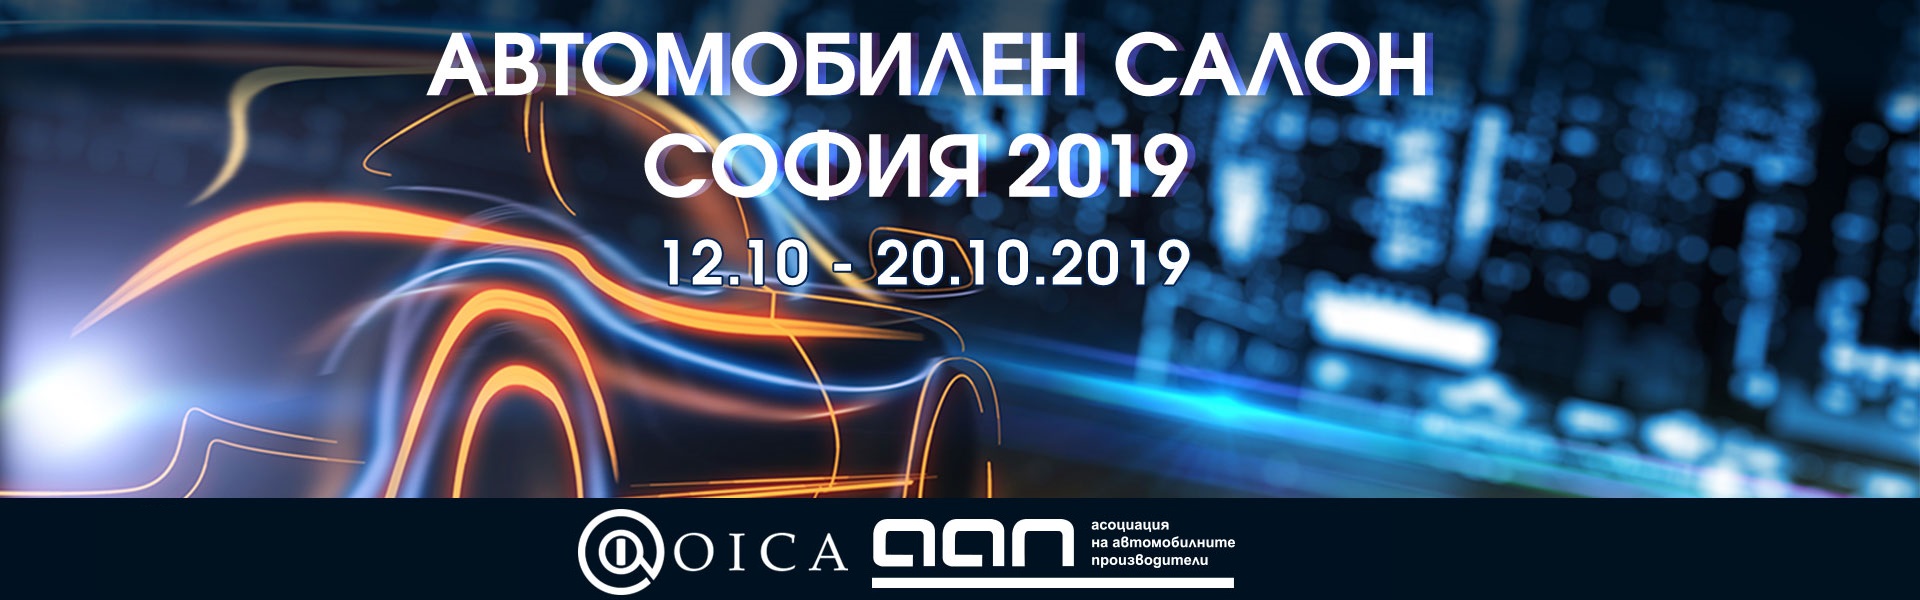 ”Автомобилен салон София 2019” ще бъде открит този петък